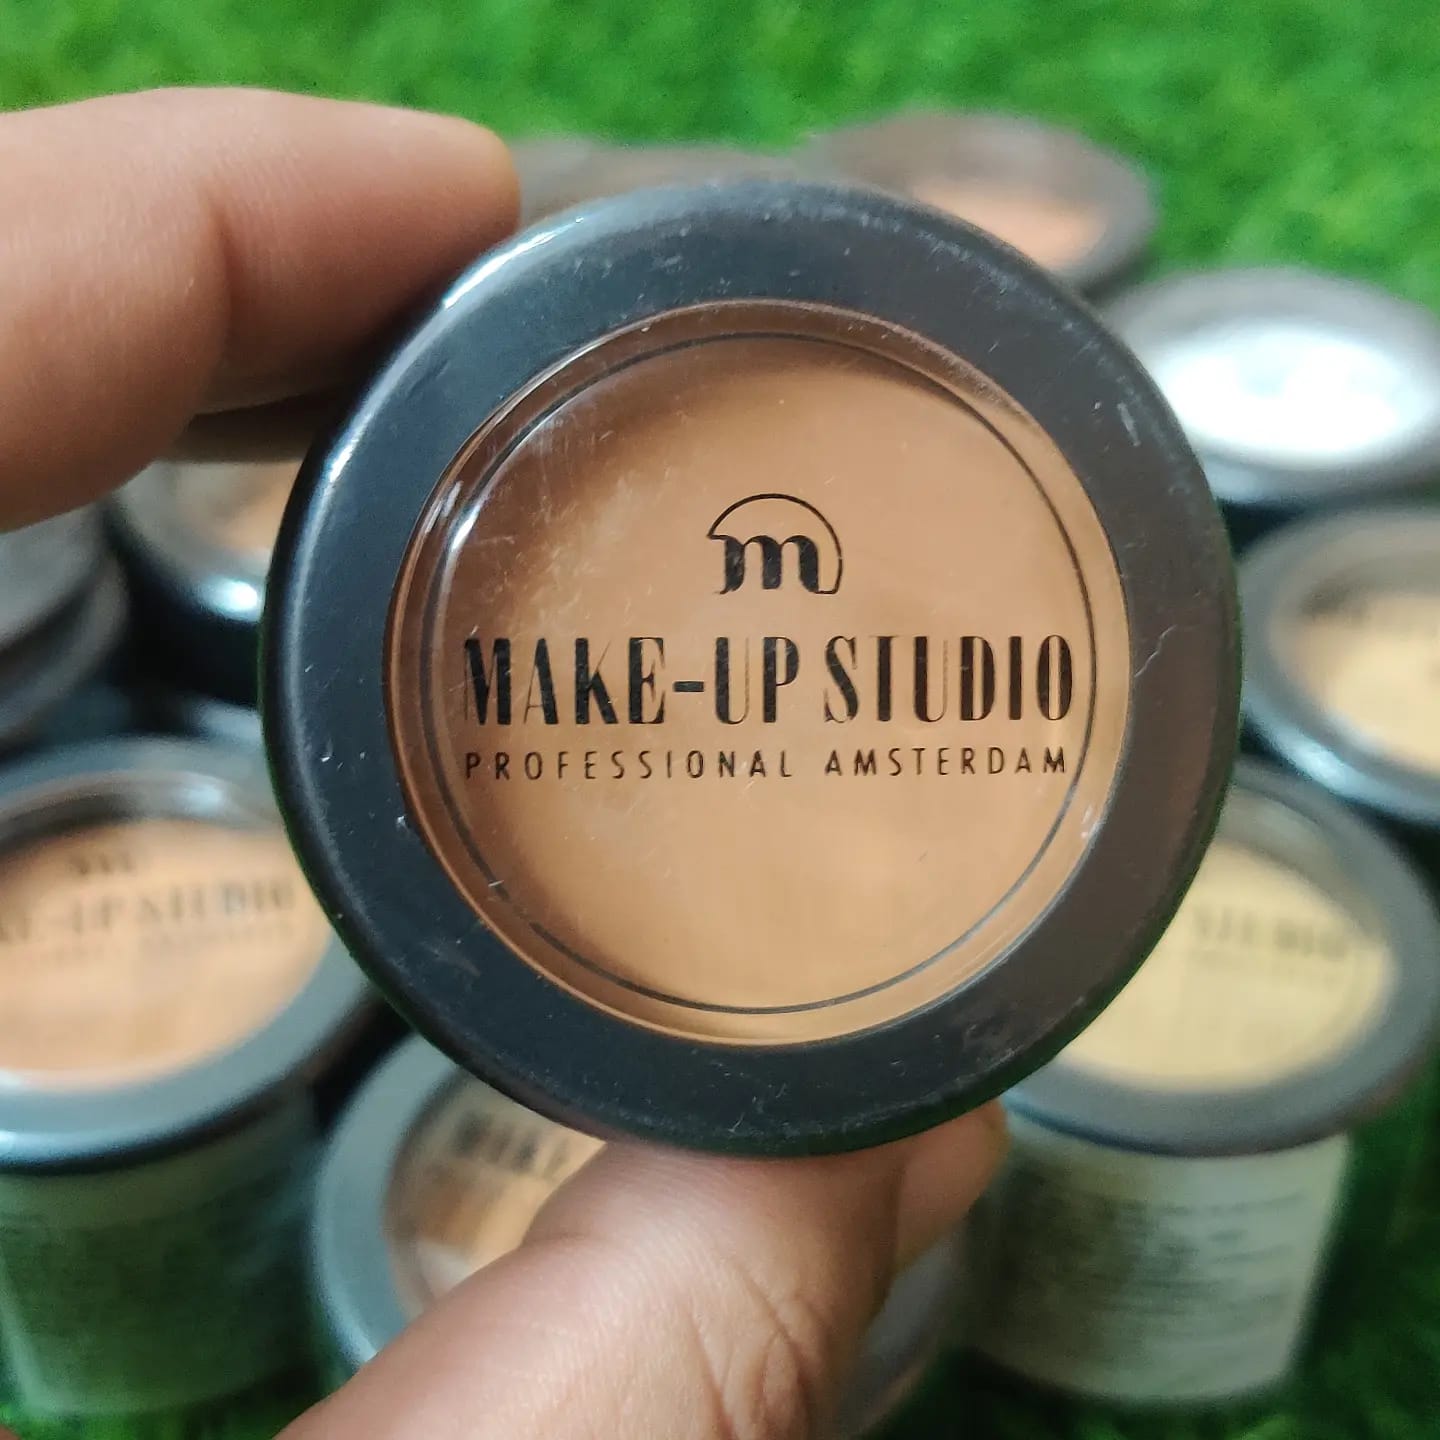 Tutustu 36+ imagen makeup studio products